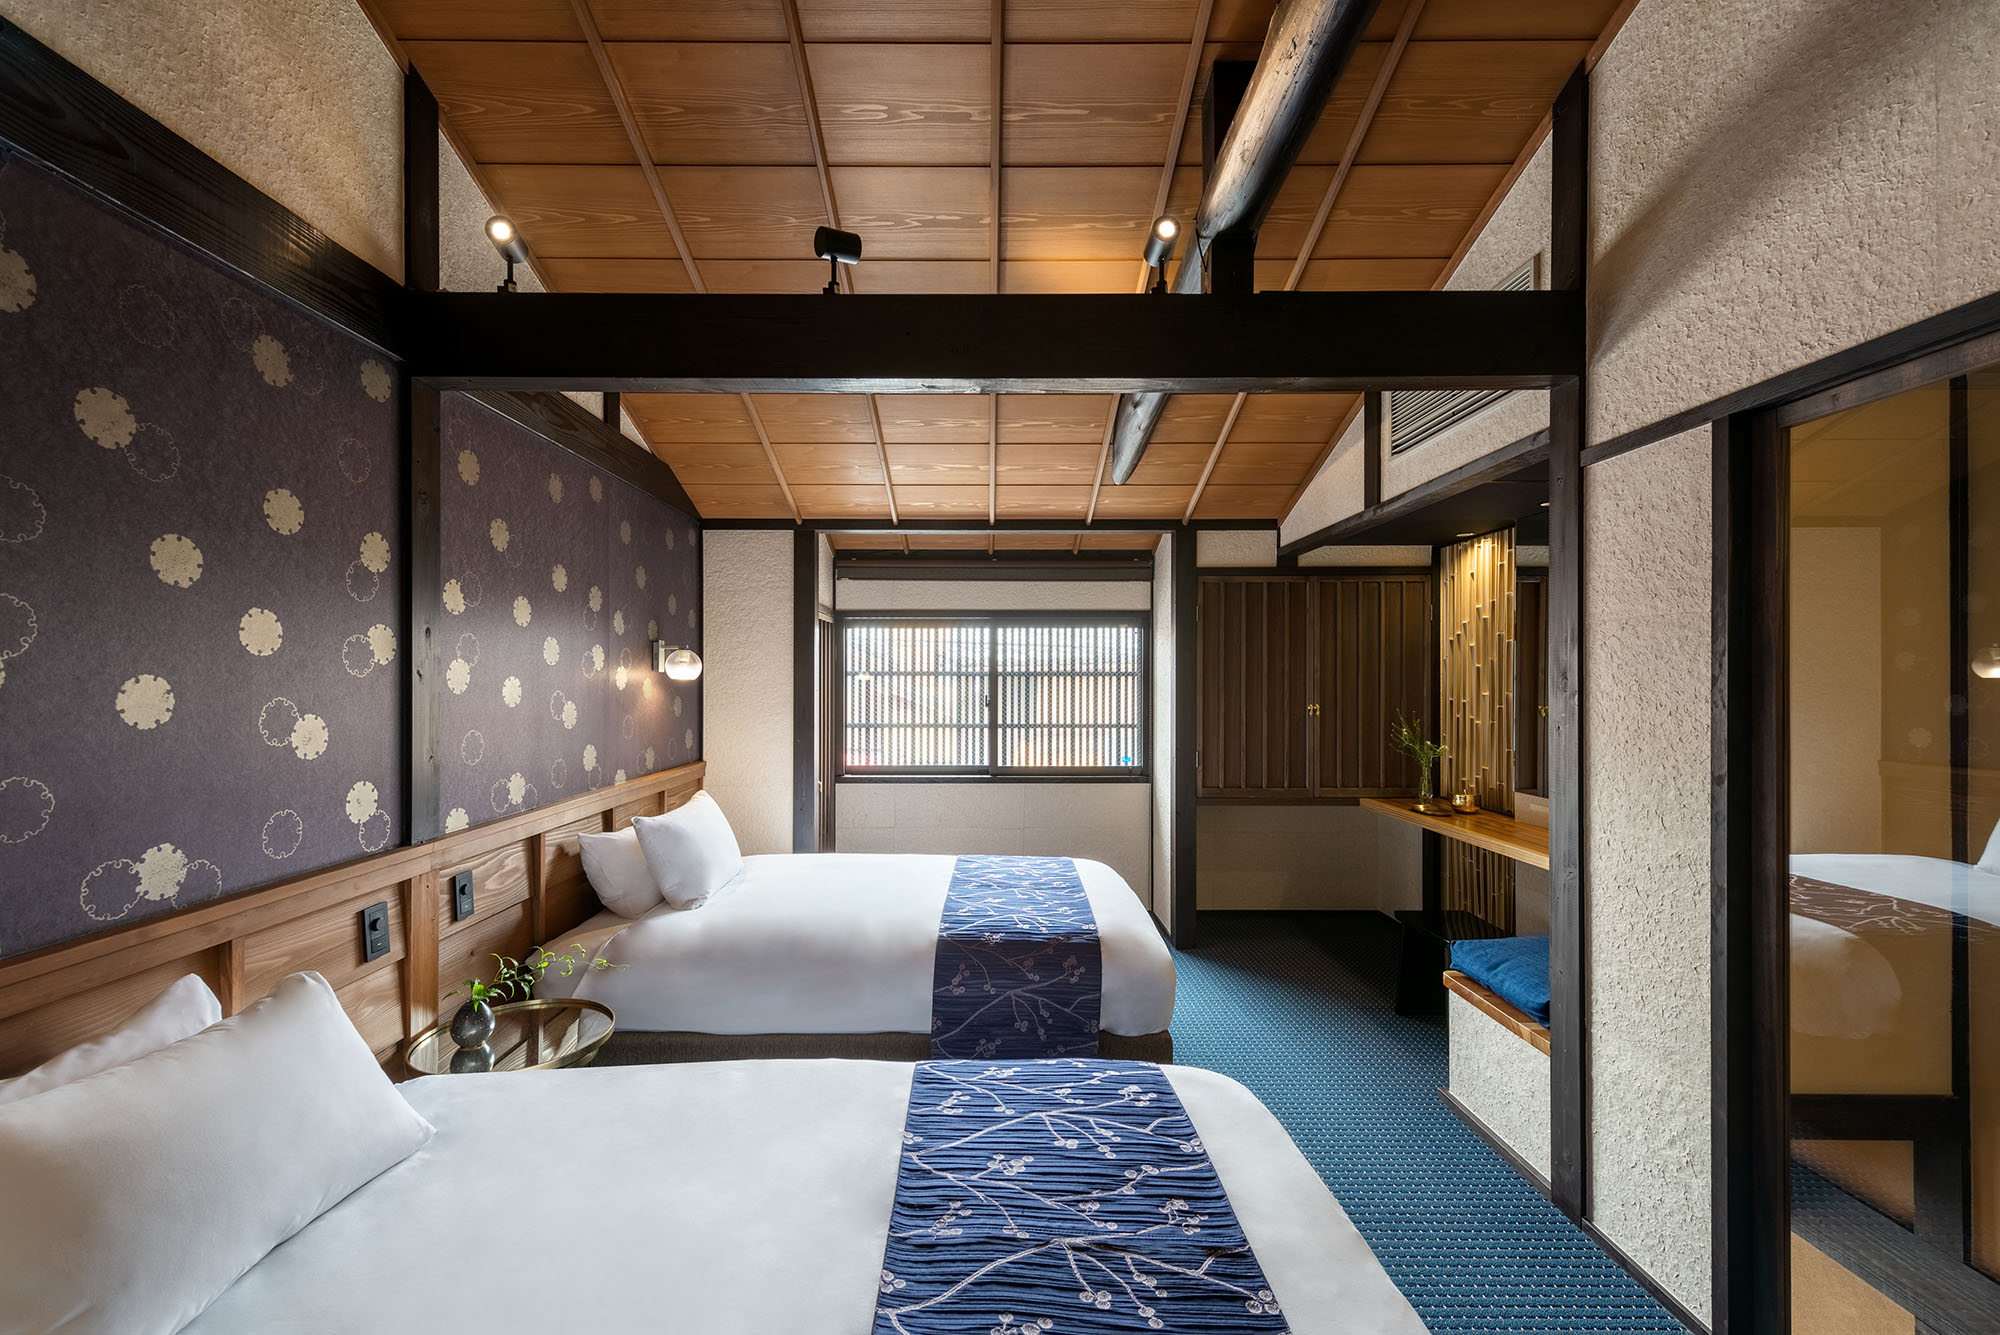 'Rikka' Wall Paper Design - Machiya House Features